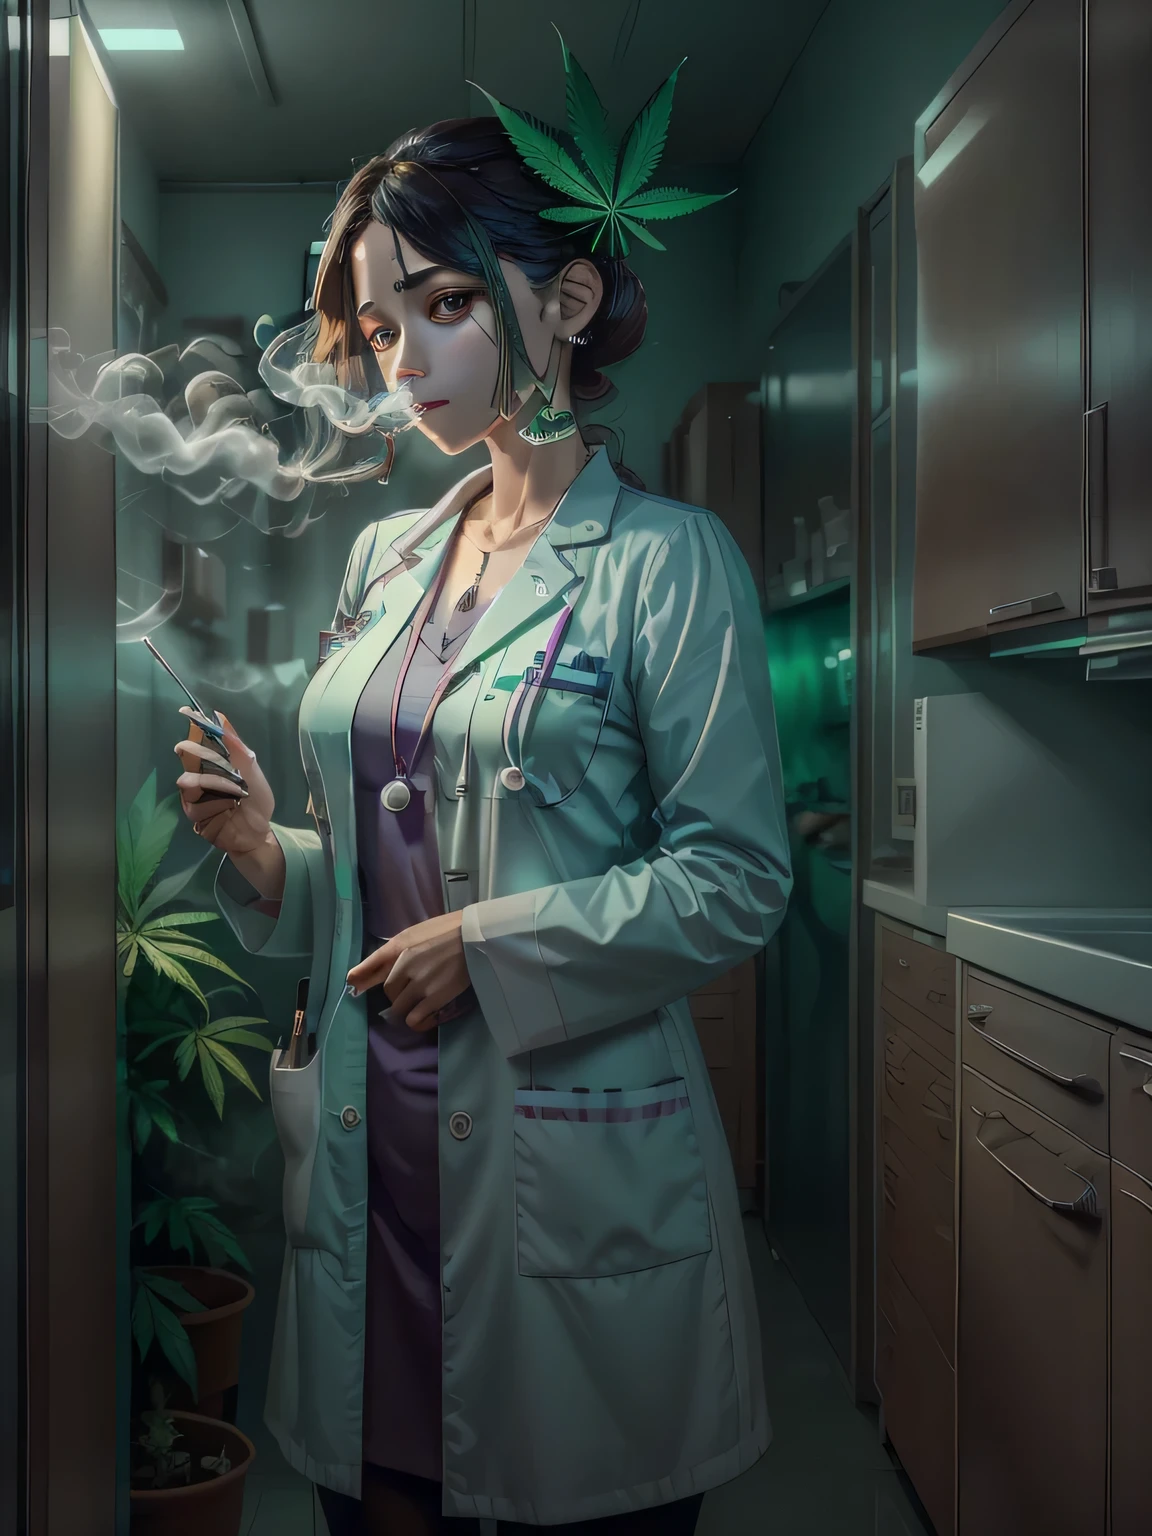 穿著白色醫生製服的女孩抽大麻, 背景是一個醫療櫃，裡面有一些大麻葉, 某處可能是女巫說的文字 "醫用大麻"